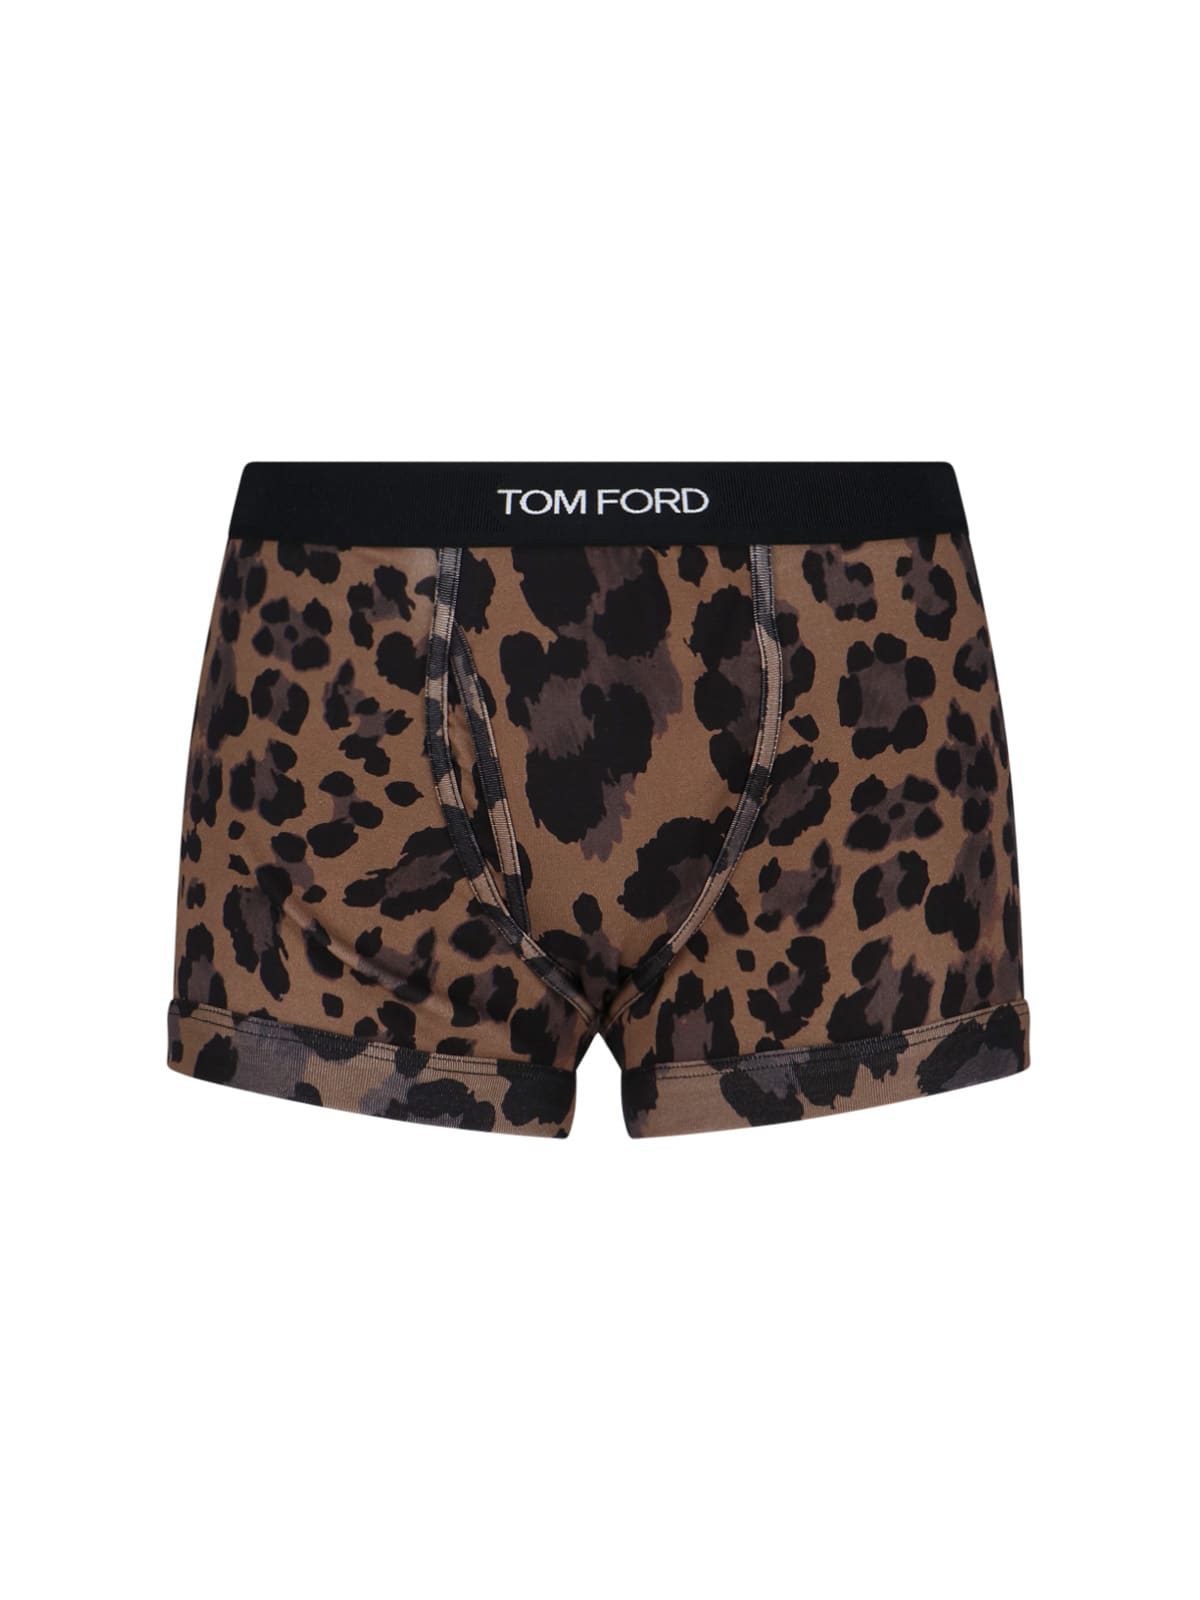 Leopard Print Boxer Shorts